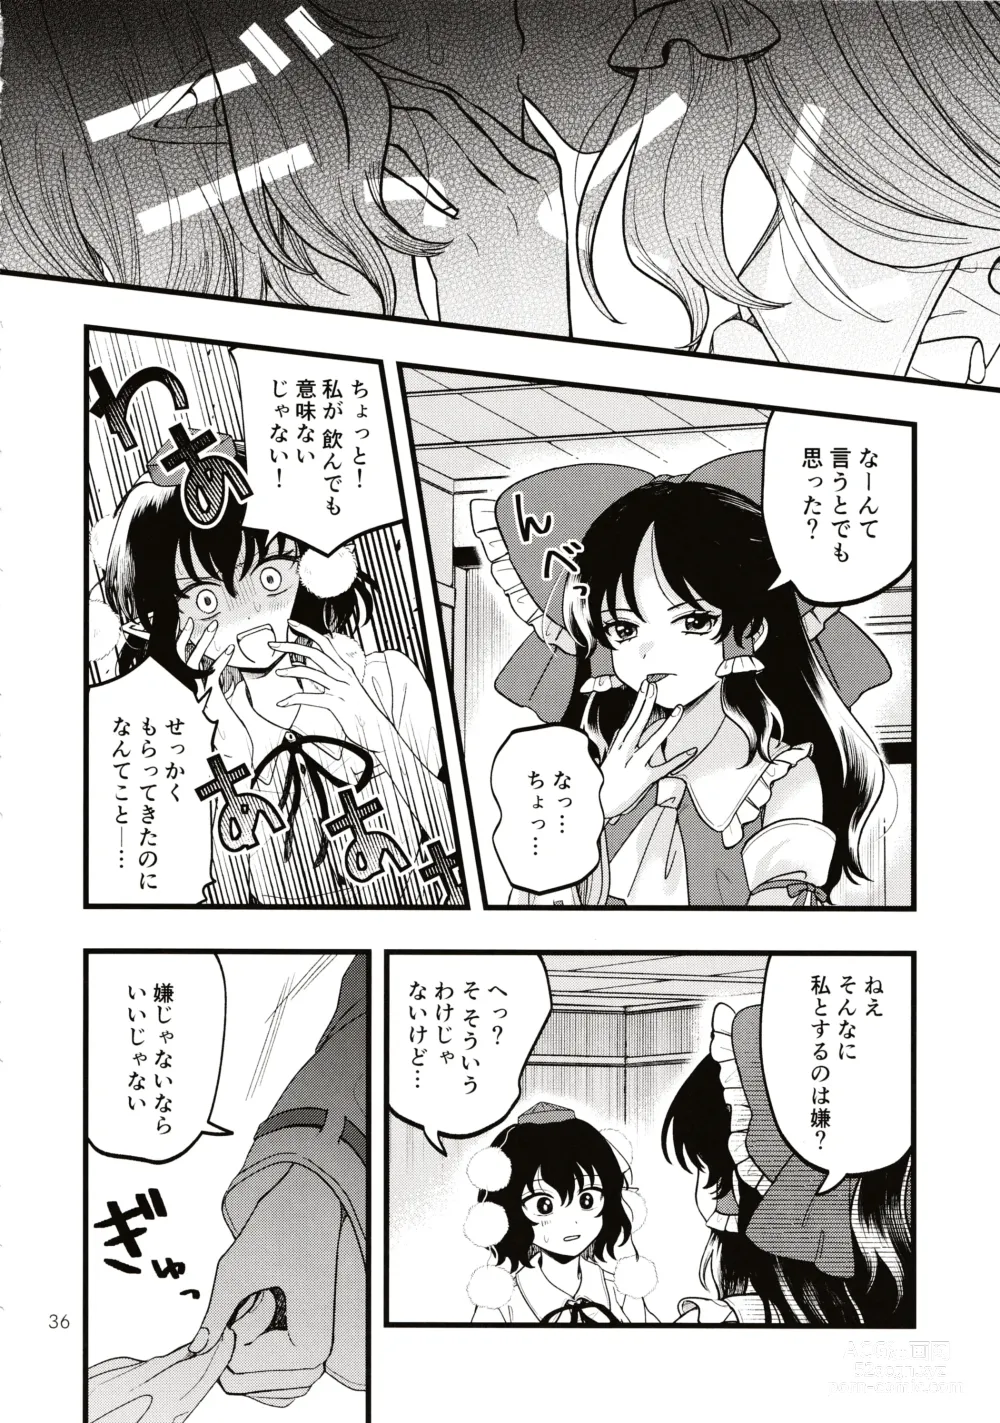 Page 35 of doujinshi Rubeus no Kankai